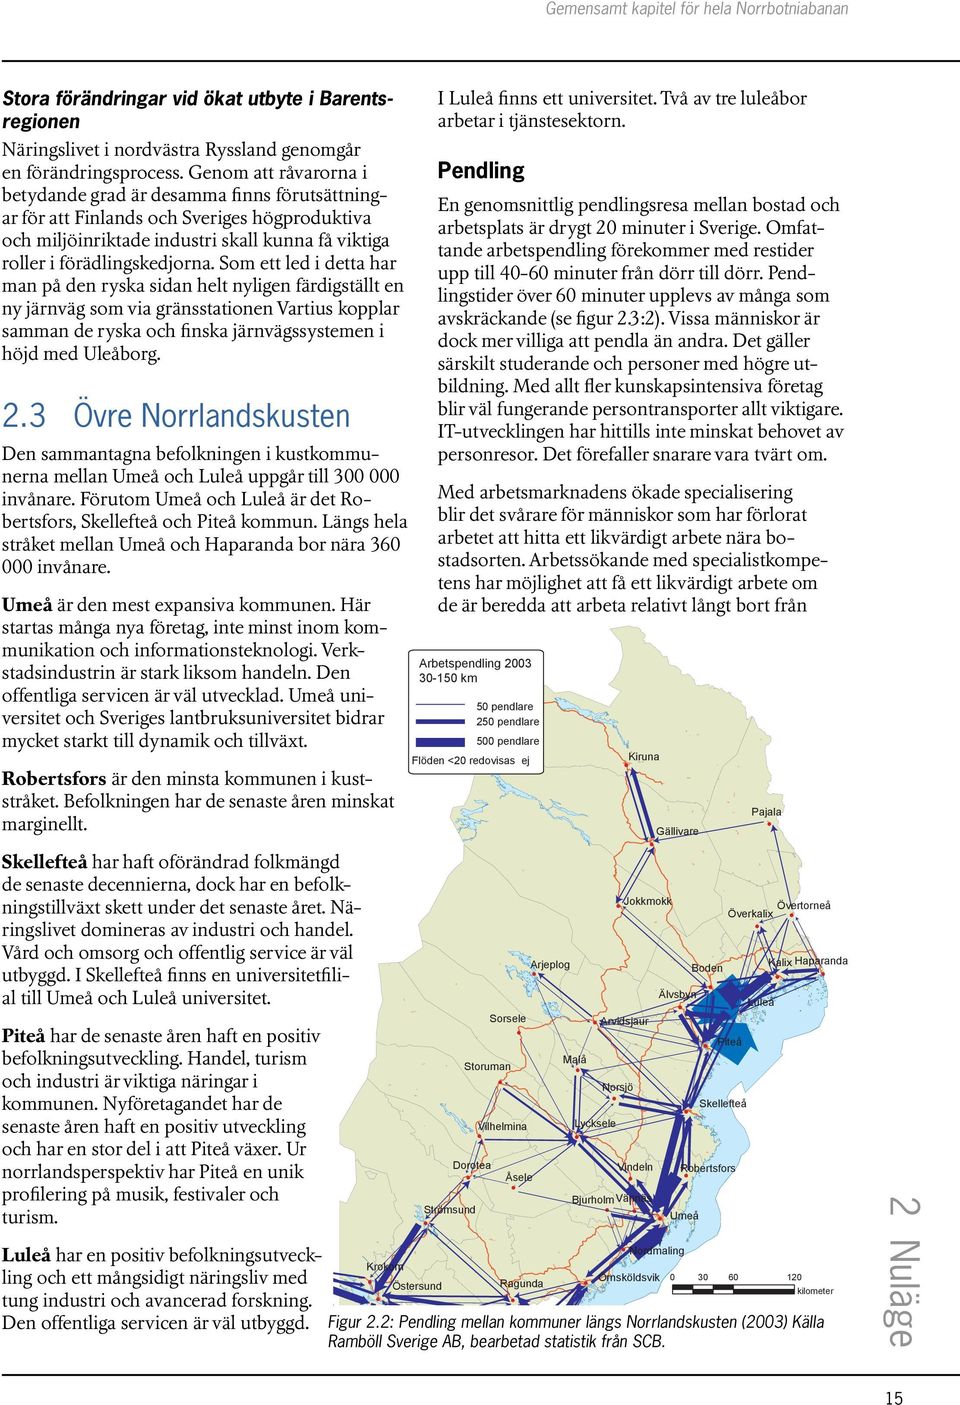 Som ett led i detta har man på den ryska sidan helt nyligen färdigställt en ny järnväg som via gränsstationen Vartius kopplar samman de ryska och finska järnvägssystemen i höjd med Uleåborg. 2.